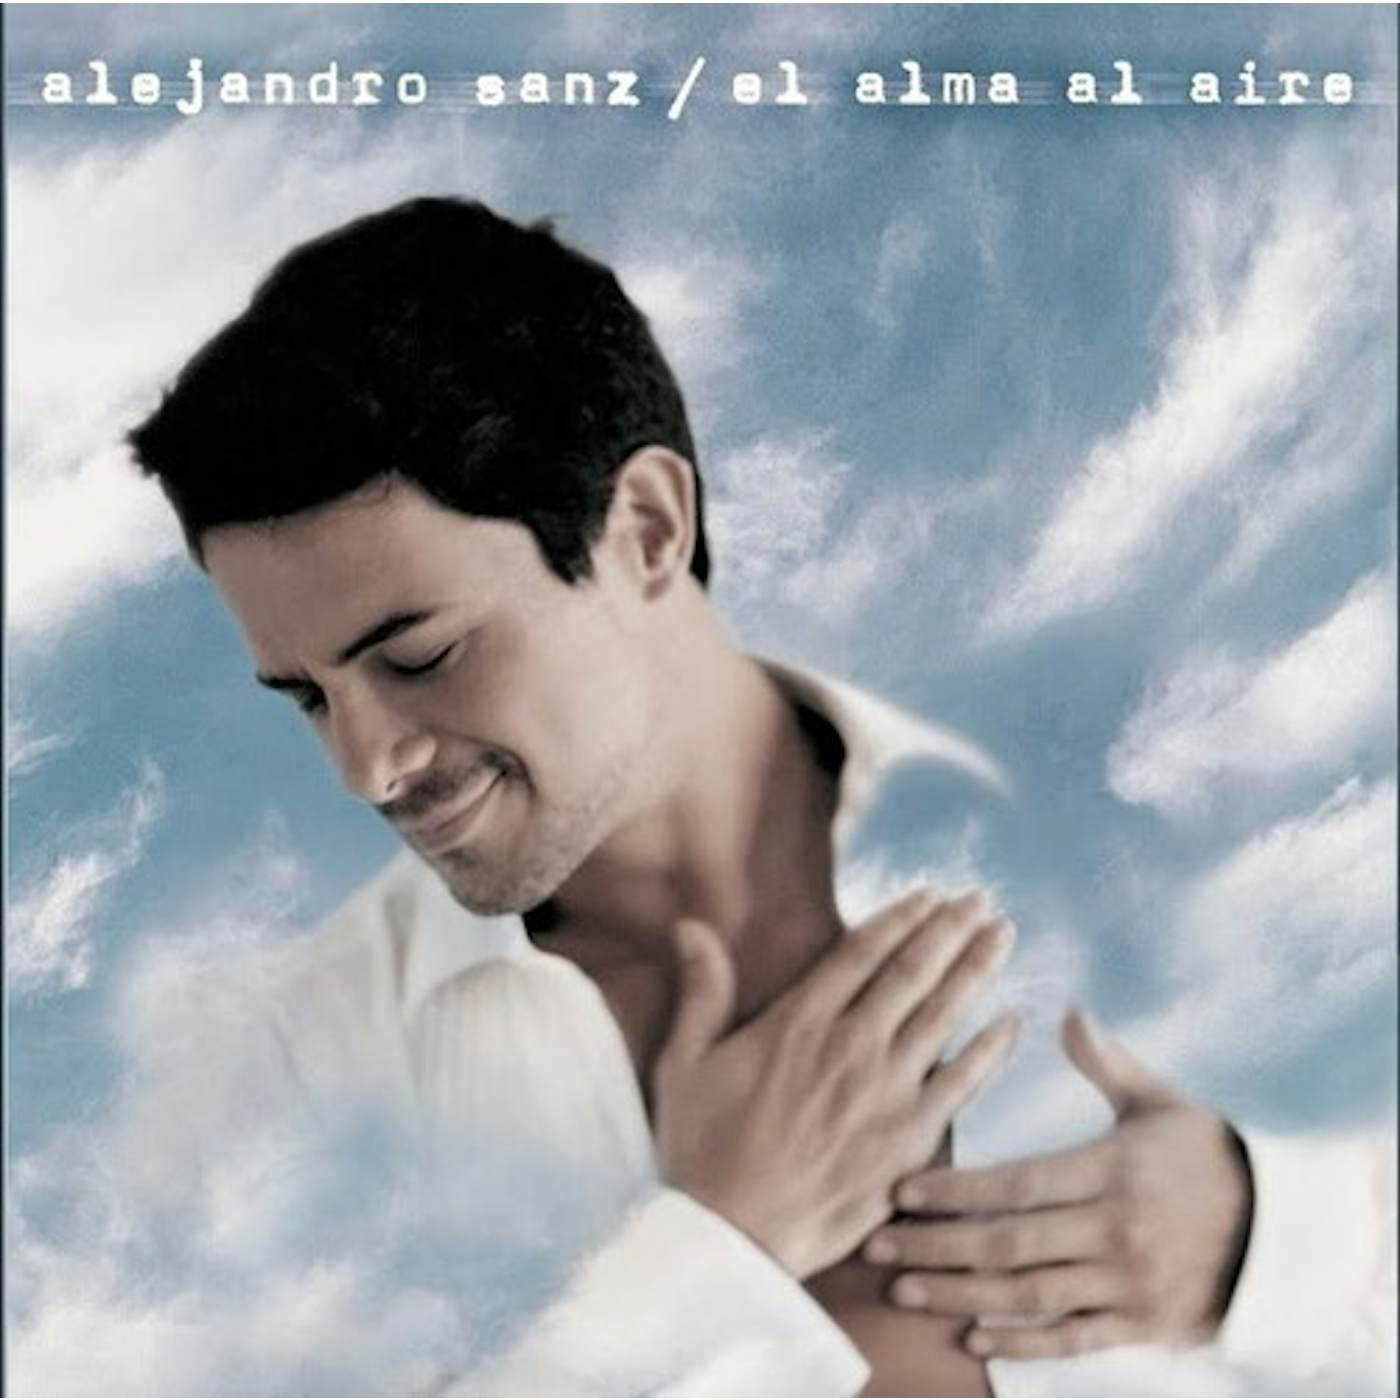 Alejandro Sanz El alma al aire Vinyl Record